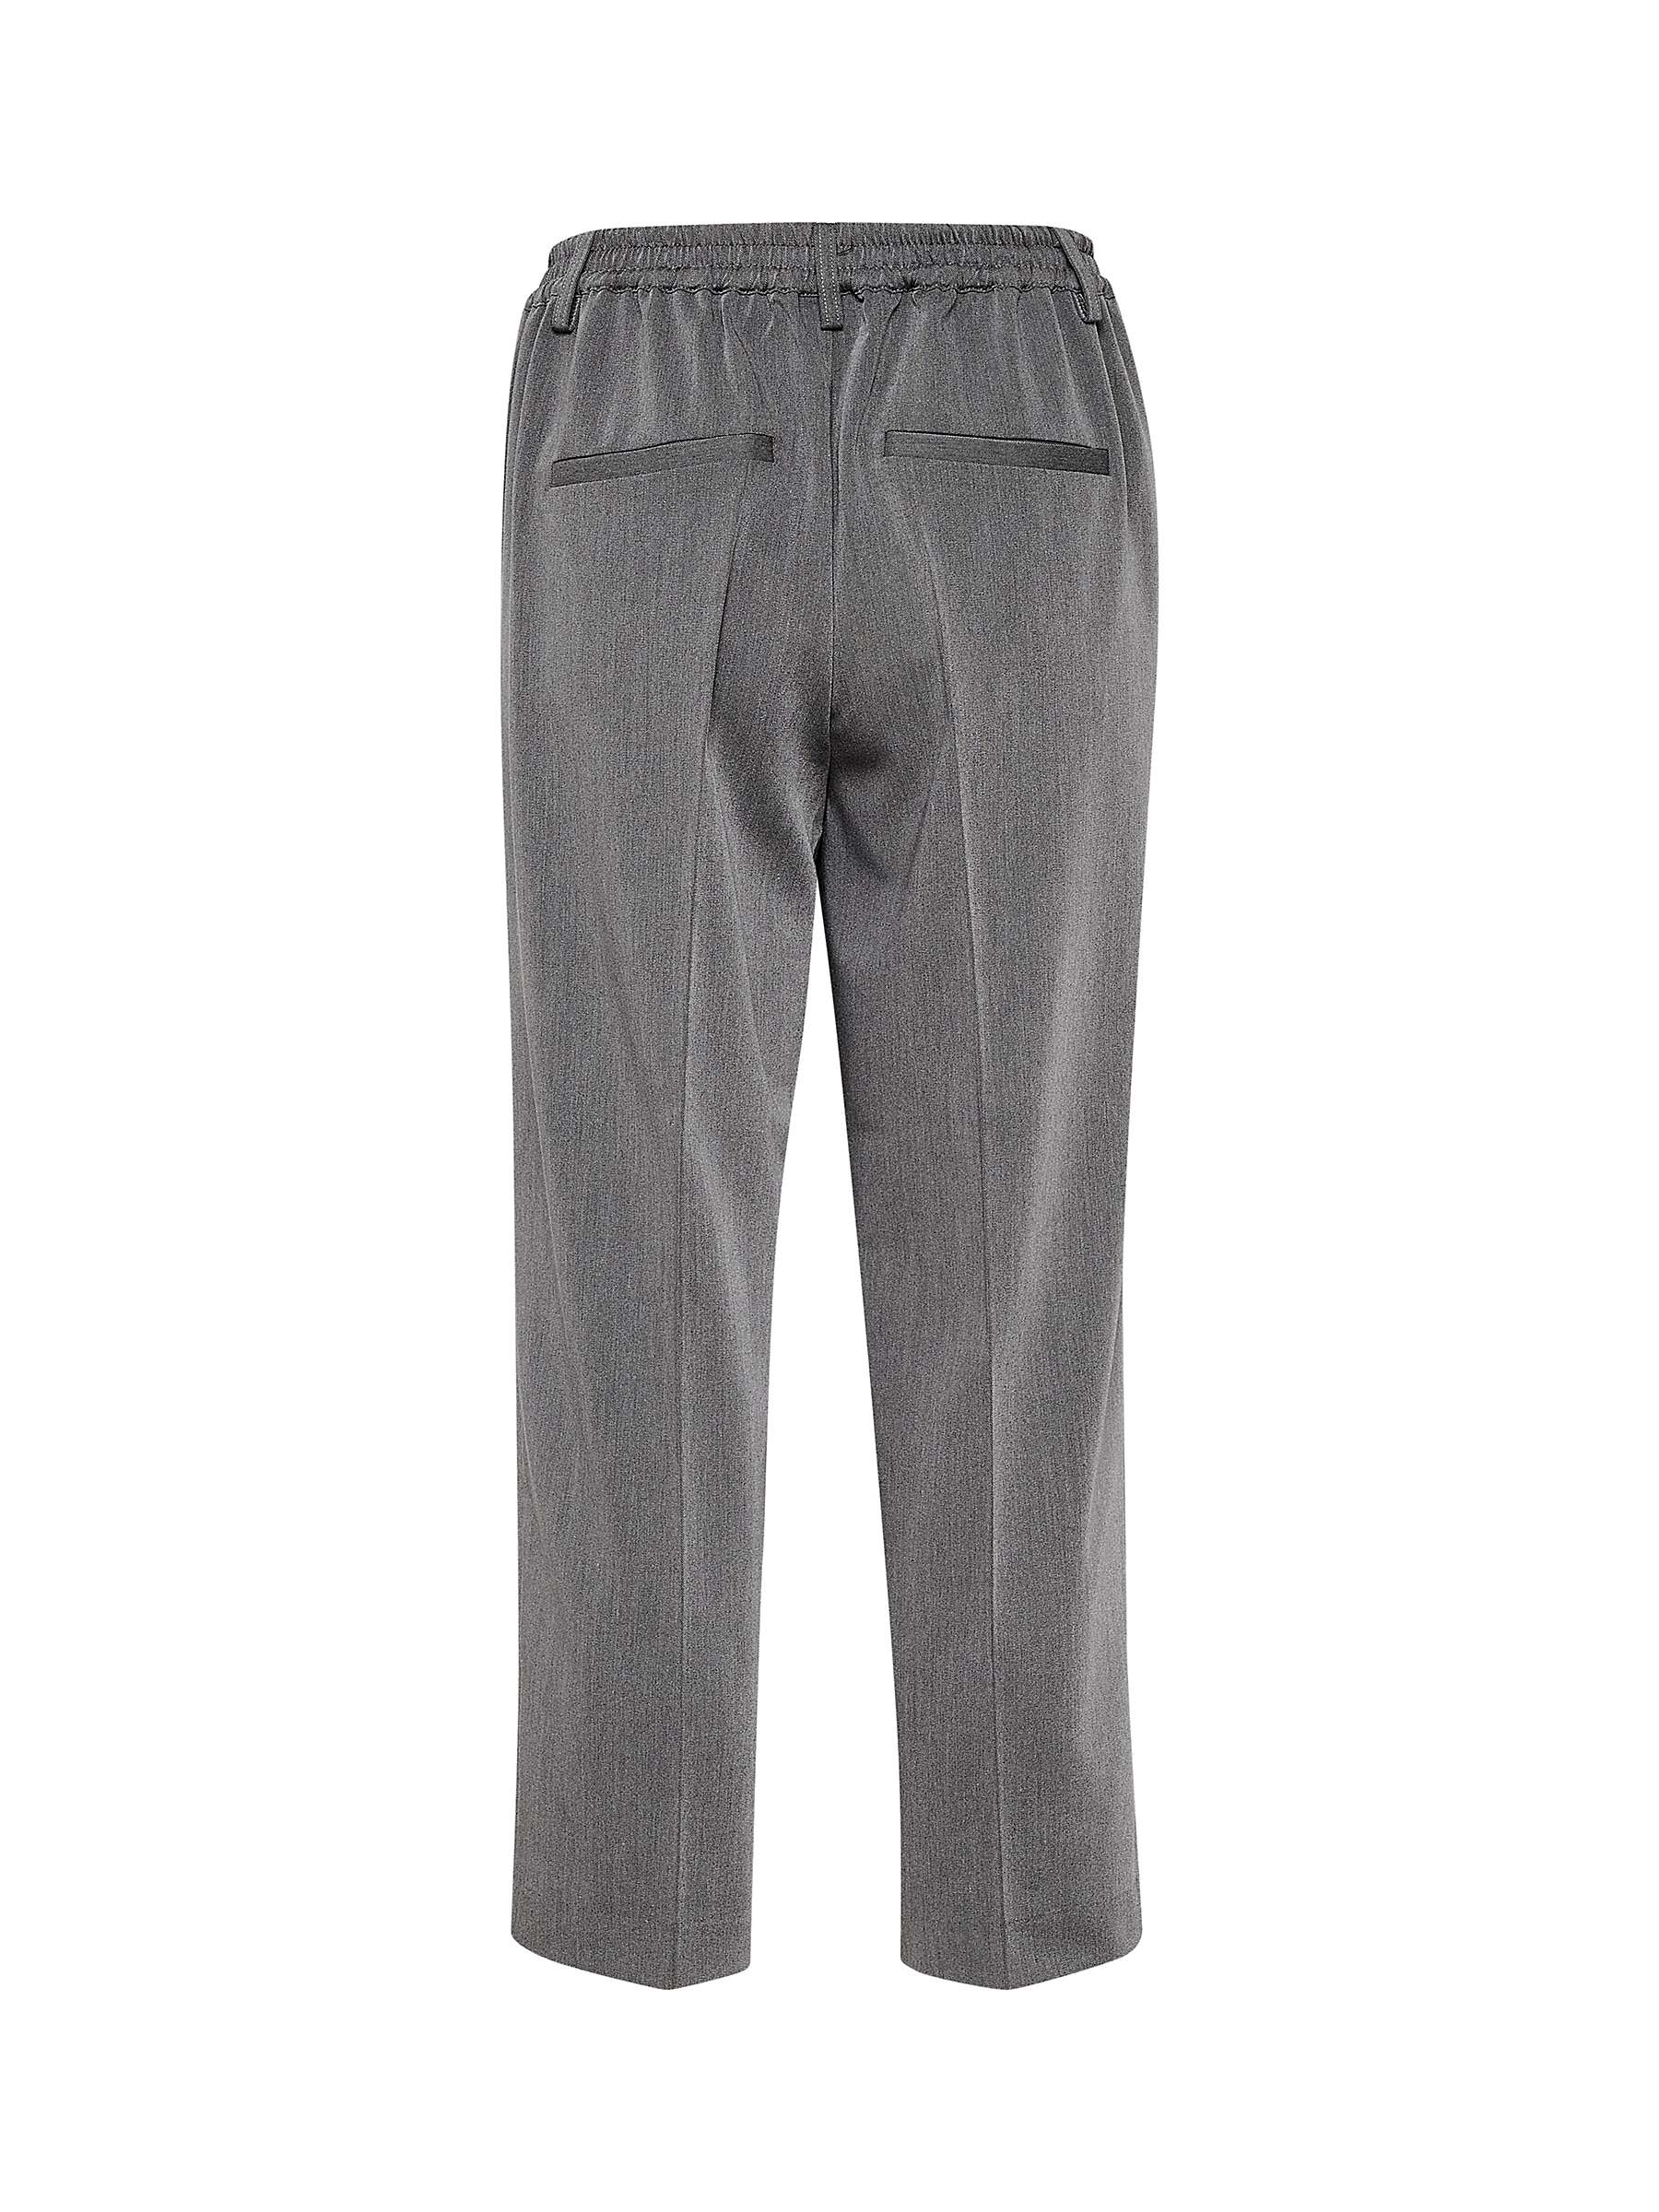 KAFFE Sakura Cropped Trousers, Dark Grey Melange at John Lewis & Partners